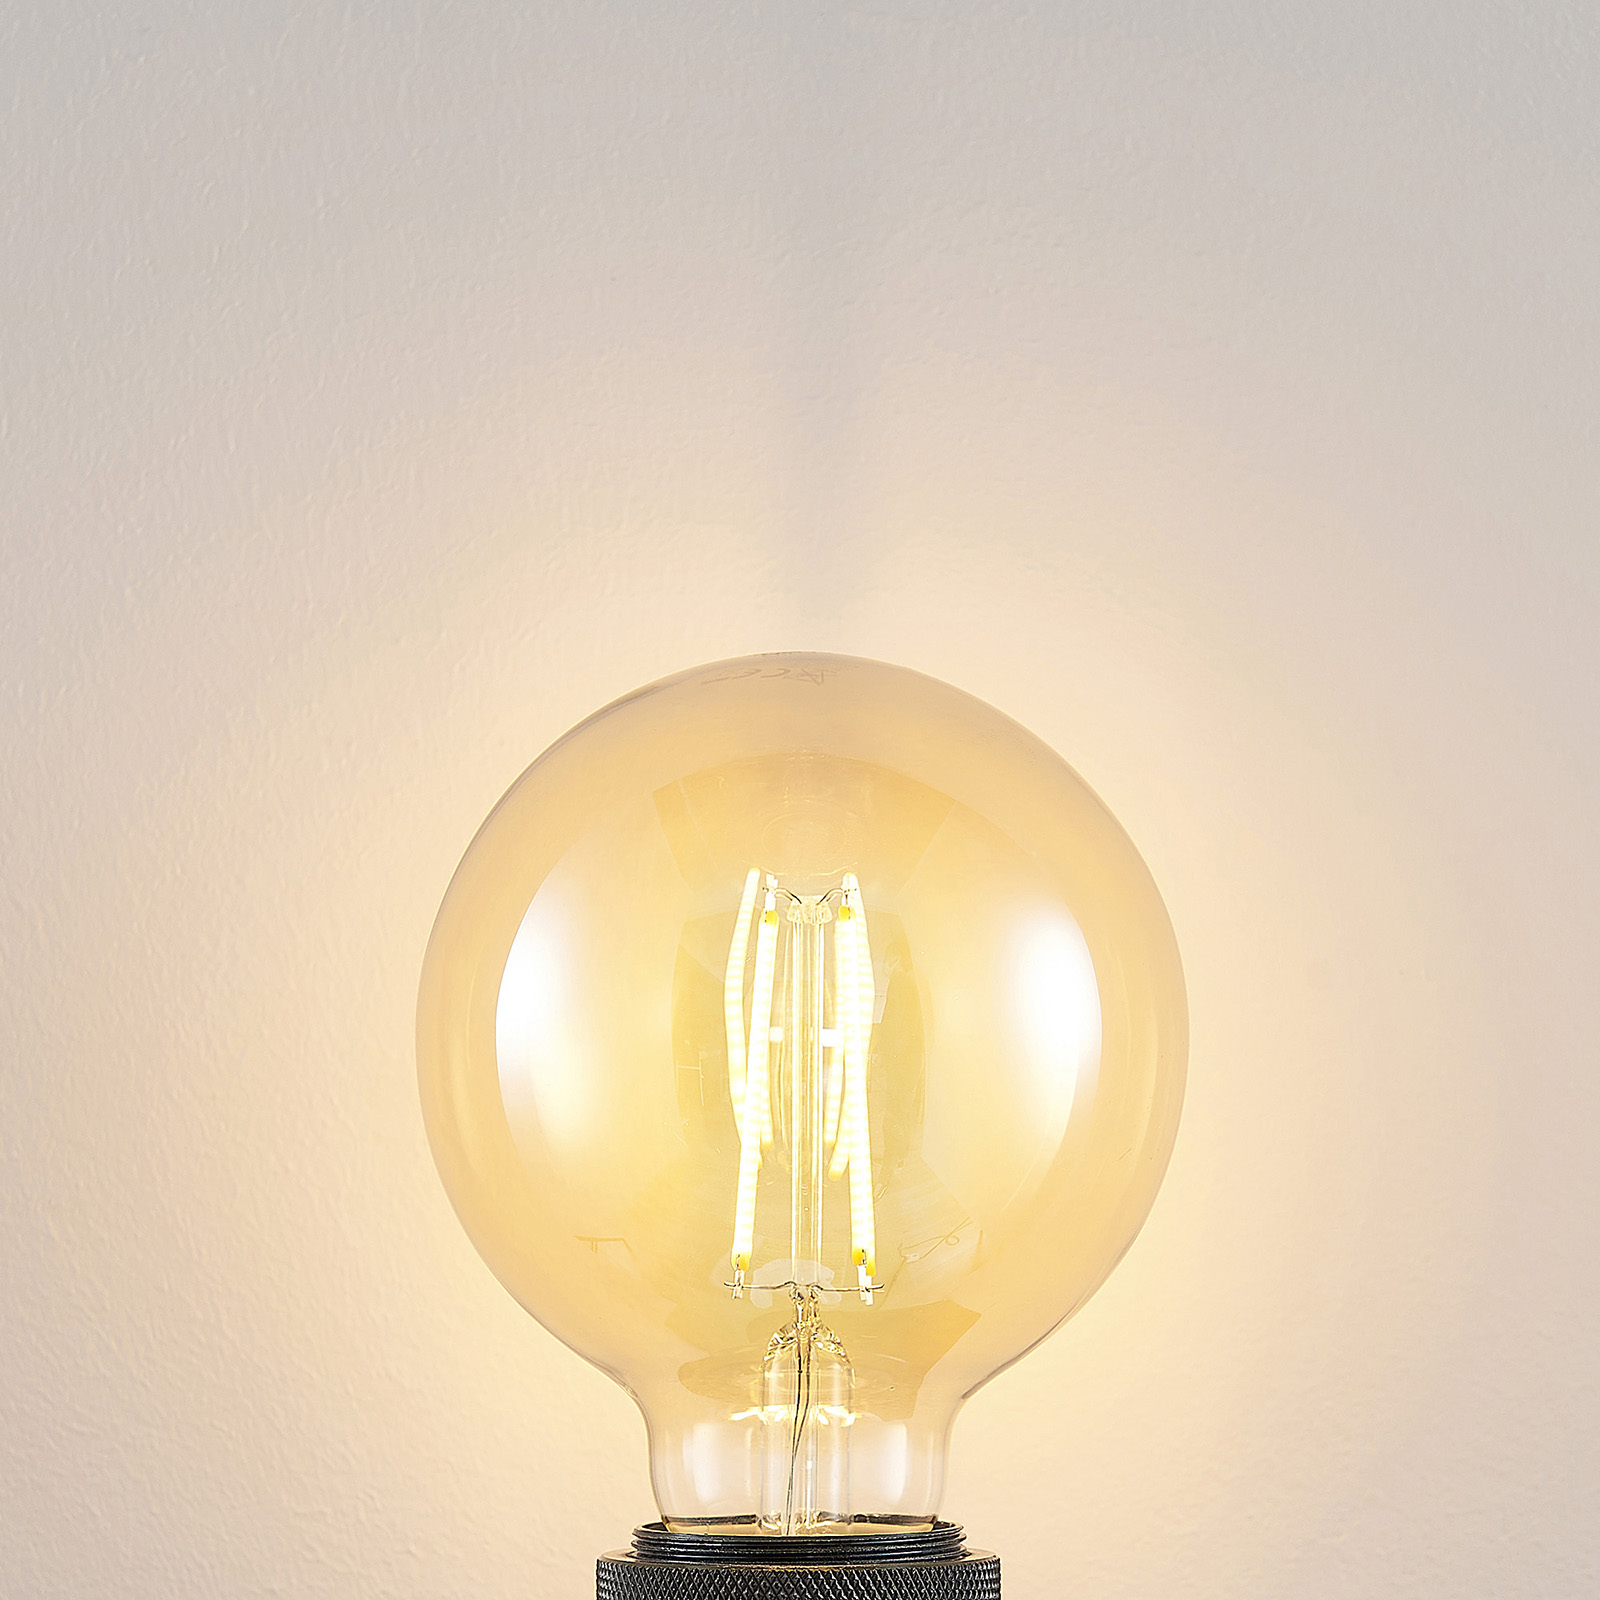 LED lamp E27 G95 6,5W 2.500K amber 3-step-dimmer